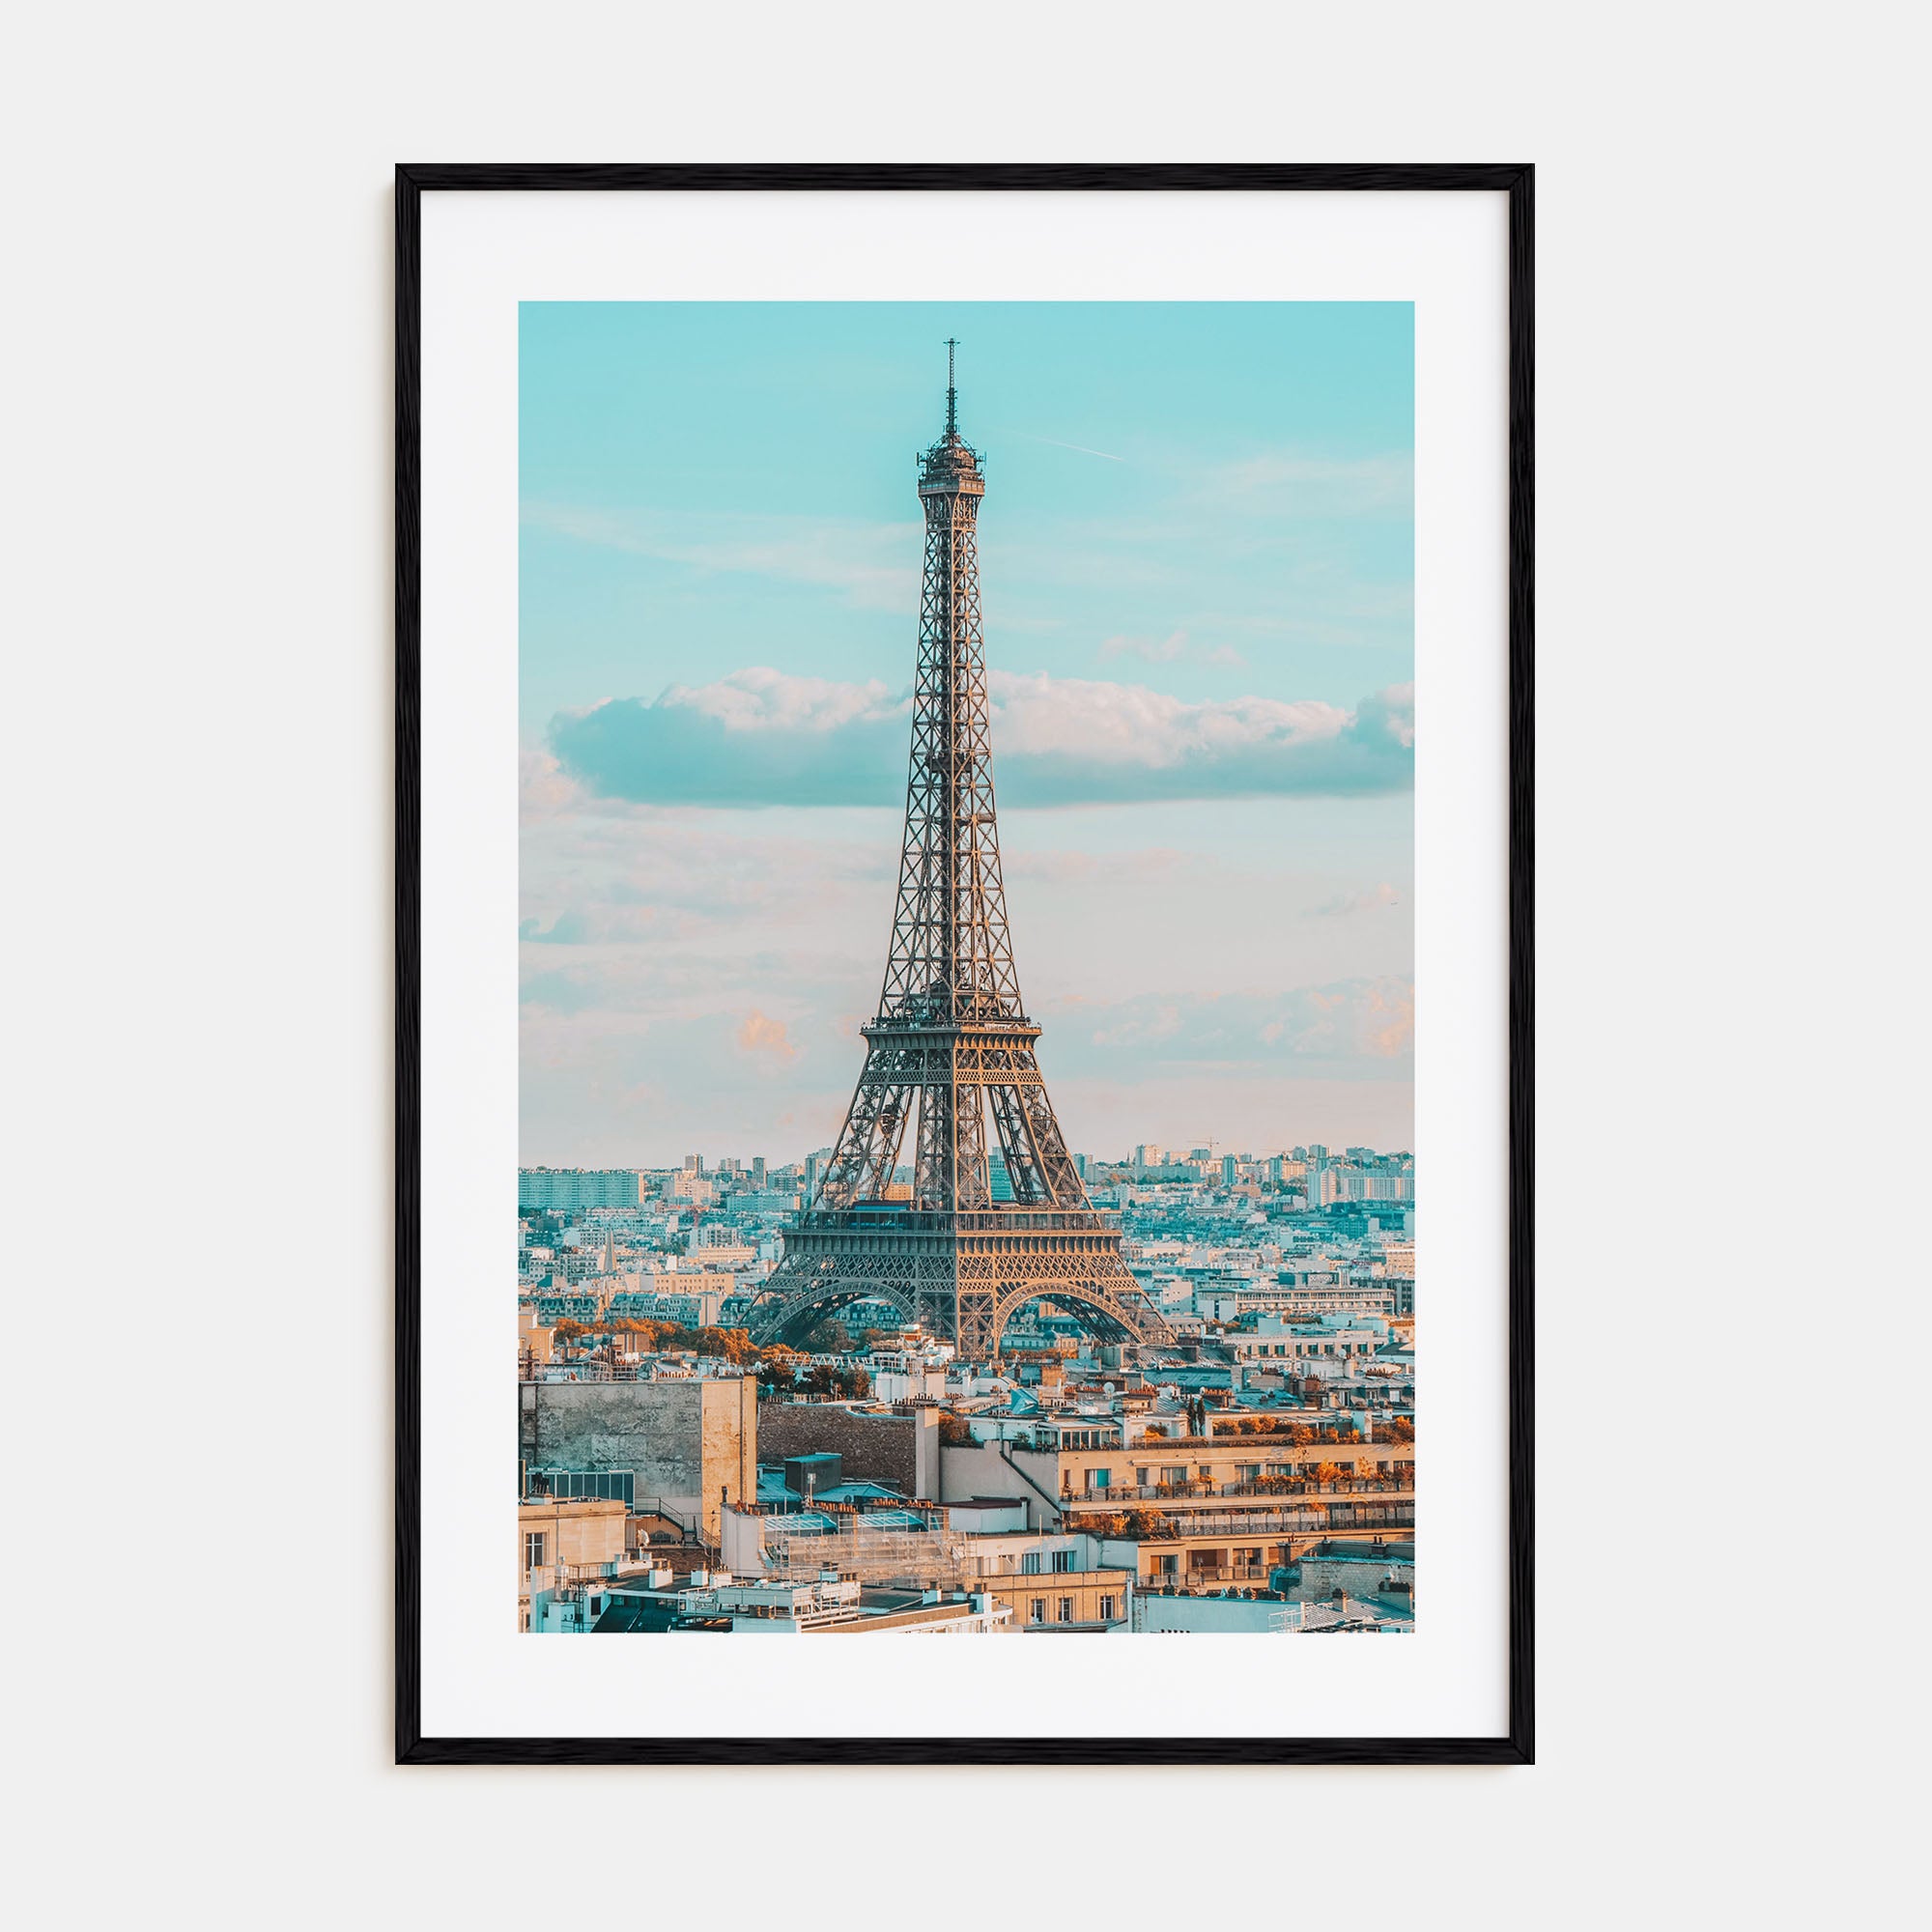 Paris Photo Color No 1 Poster